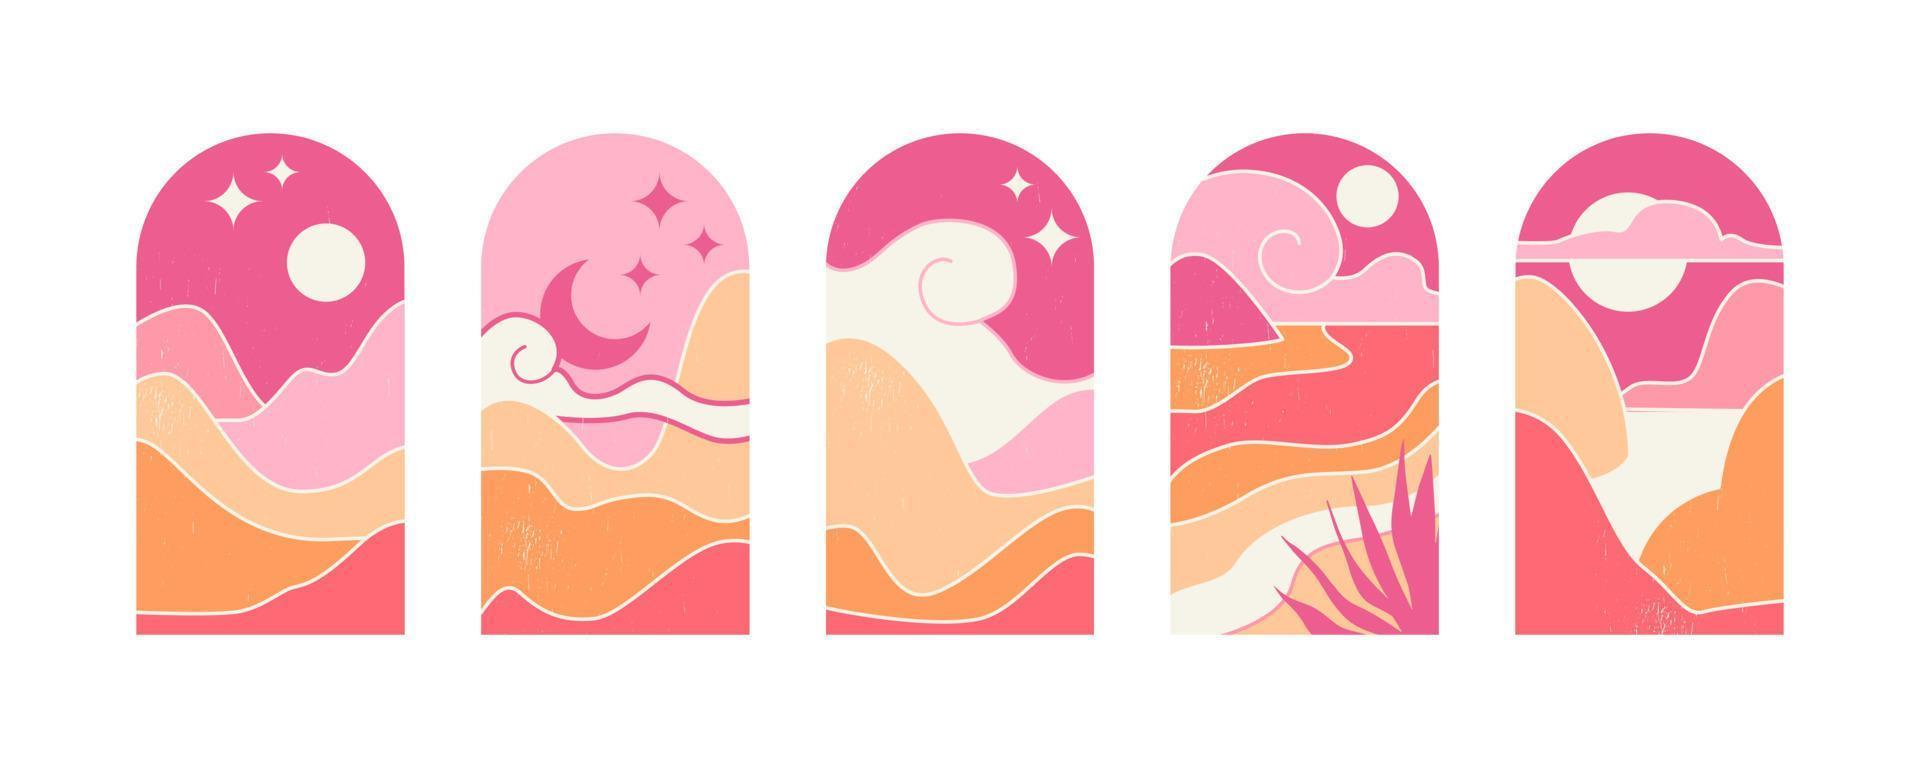 reeks van abstract berg landschappen in de bogen. vector illustratie in een stijlvol, minimalistische midden eeuw modern stijl in roze, zand tonen.